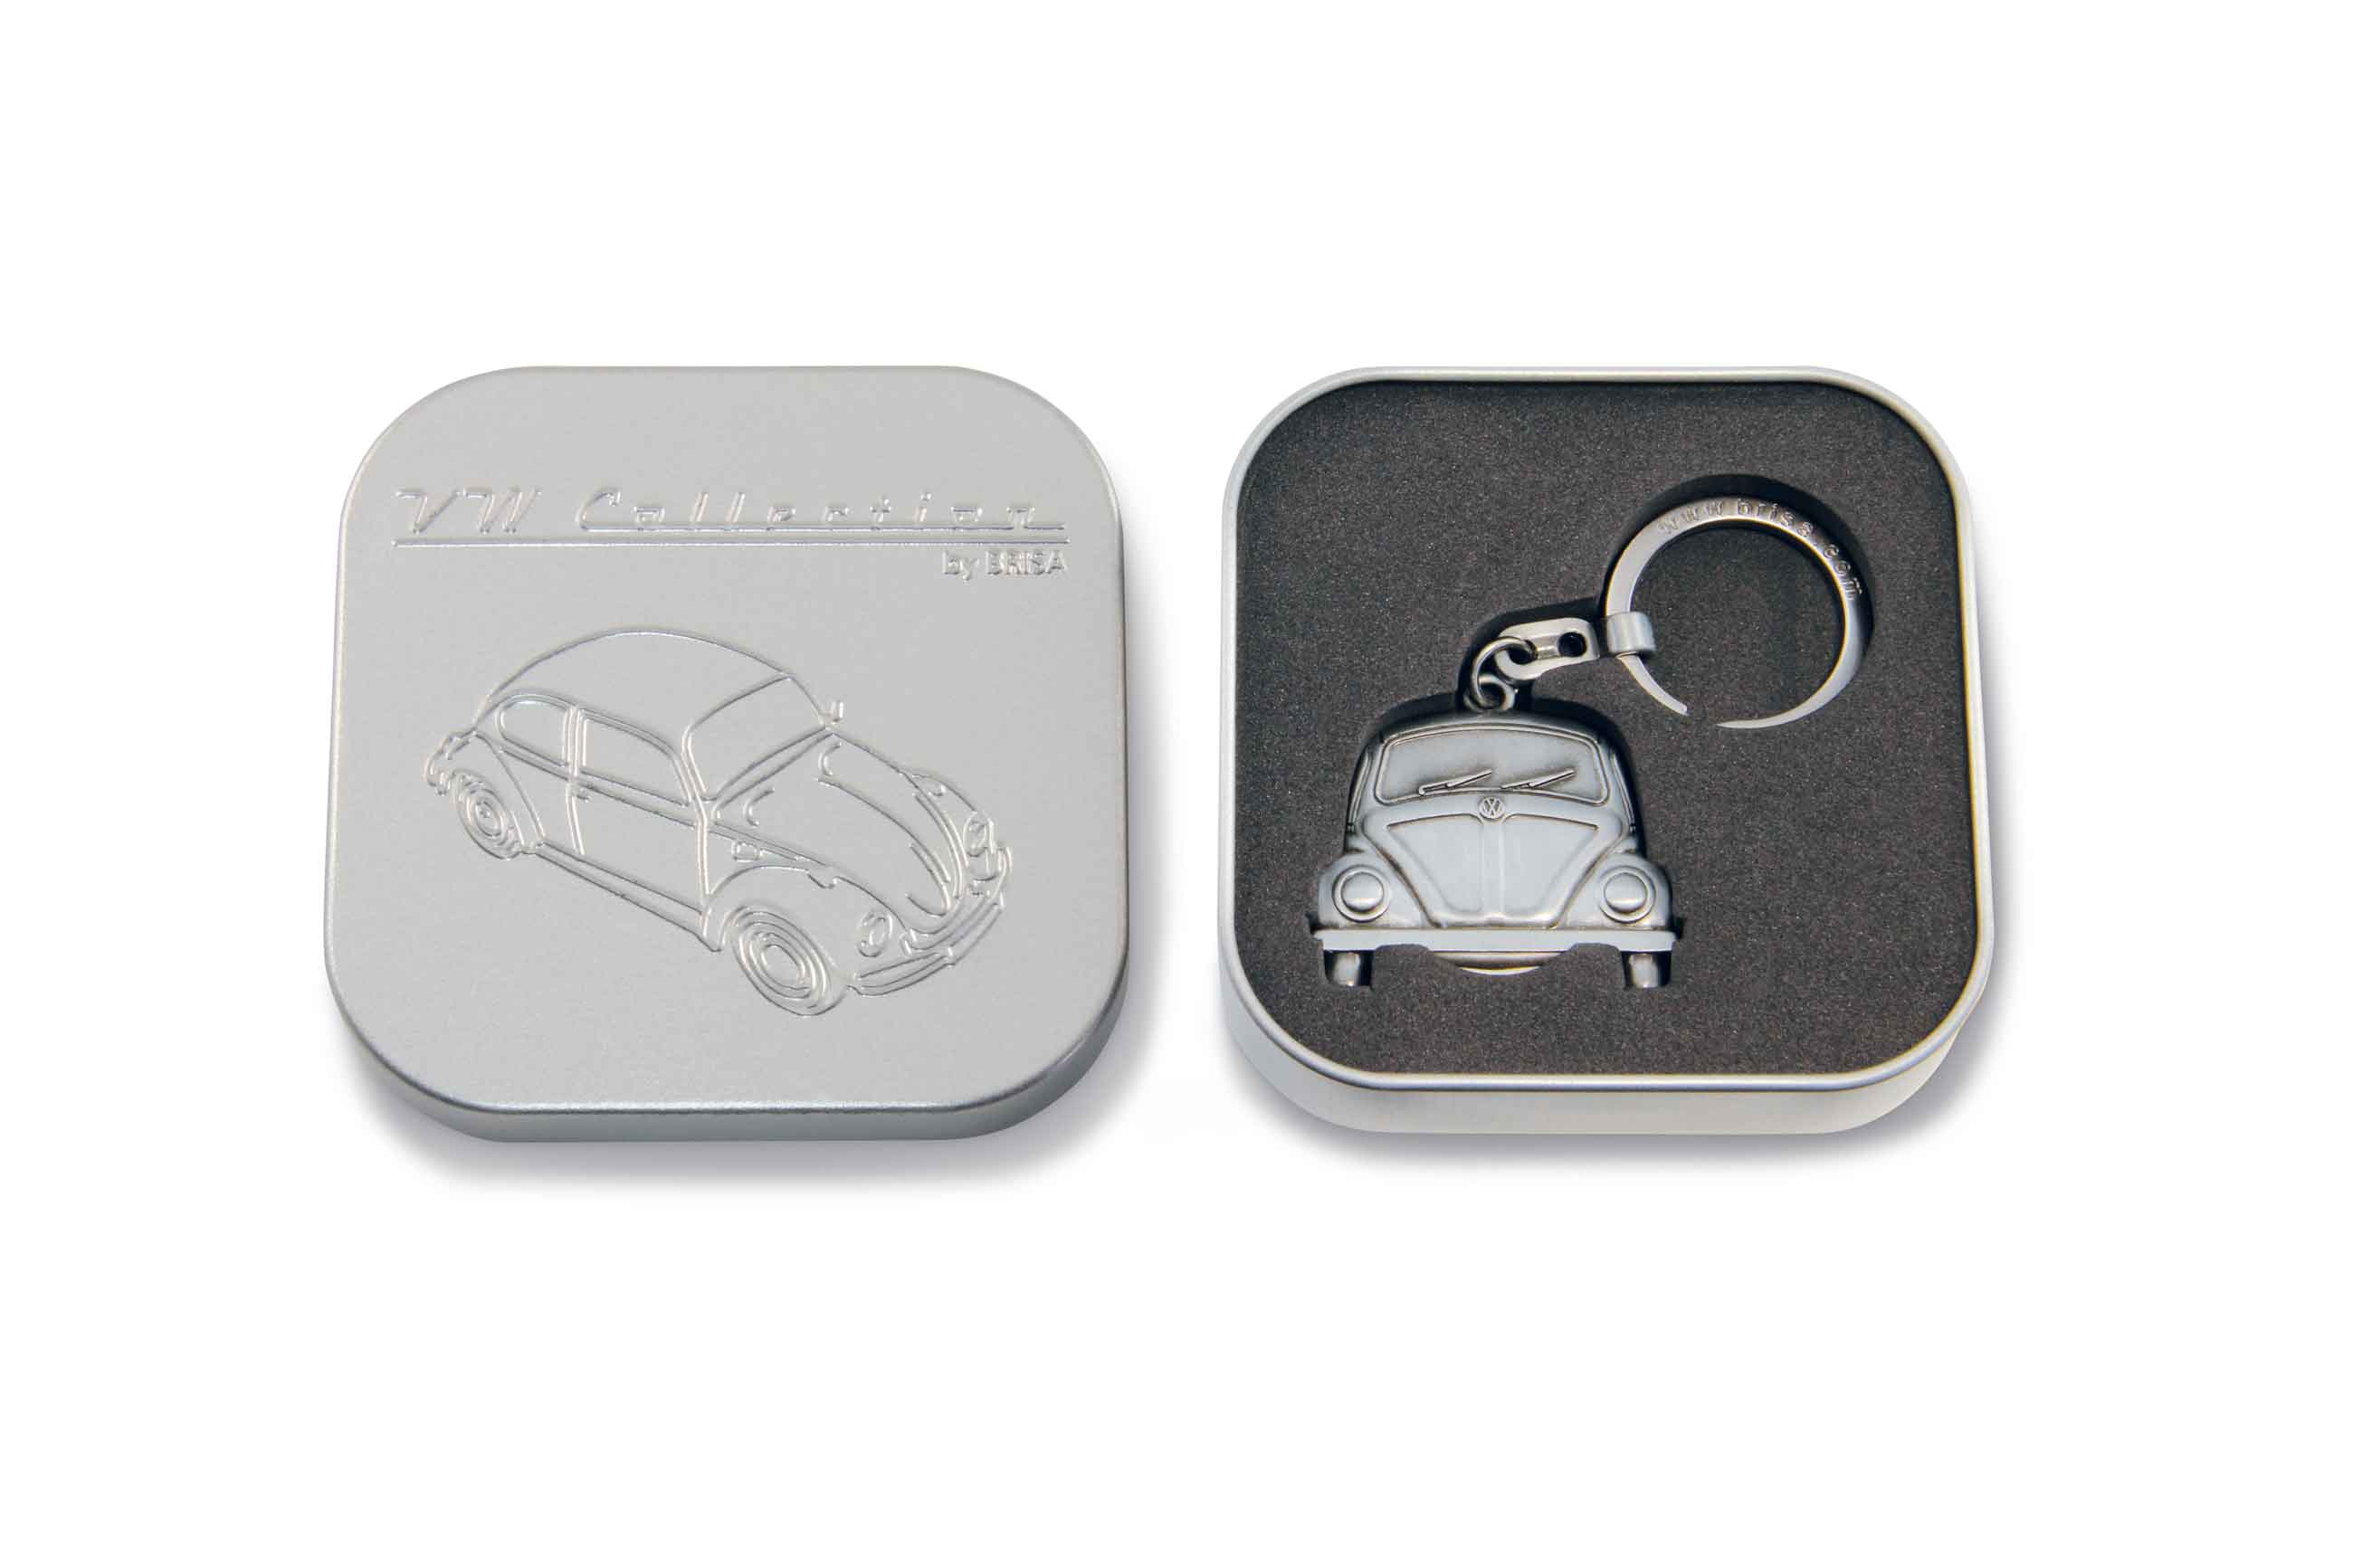 VW Käfer Schlüsselanhänger mit Einkaufswagenchip in Geschenkdose